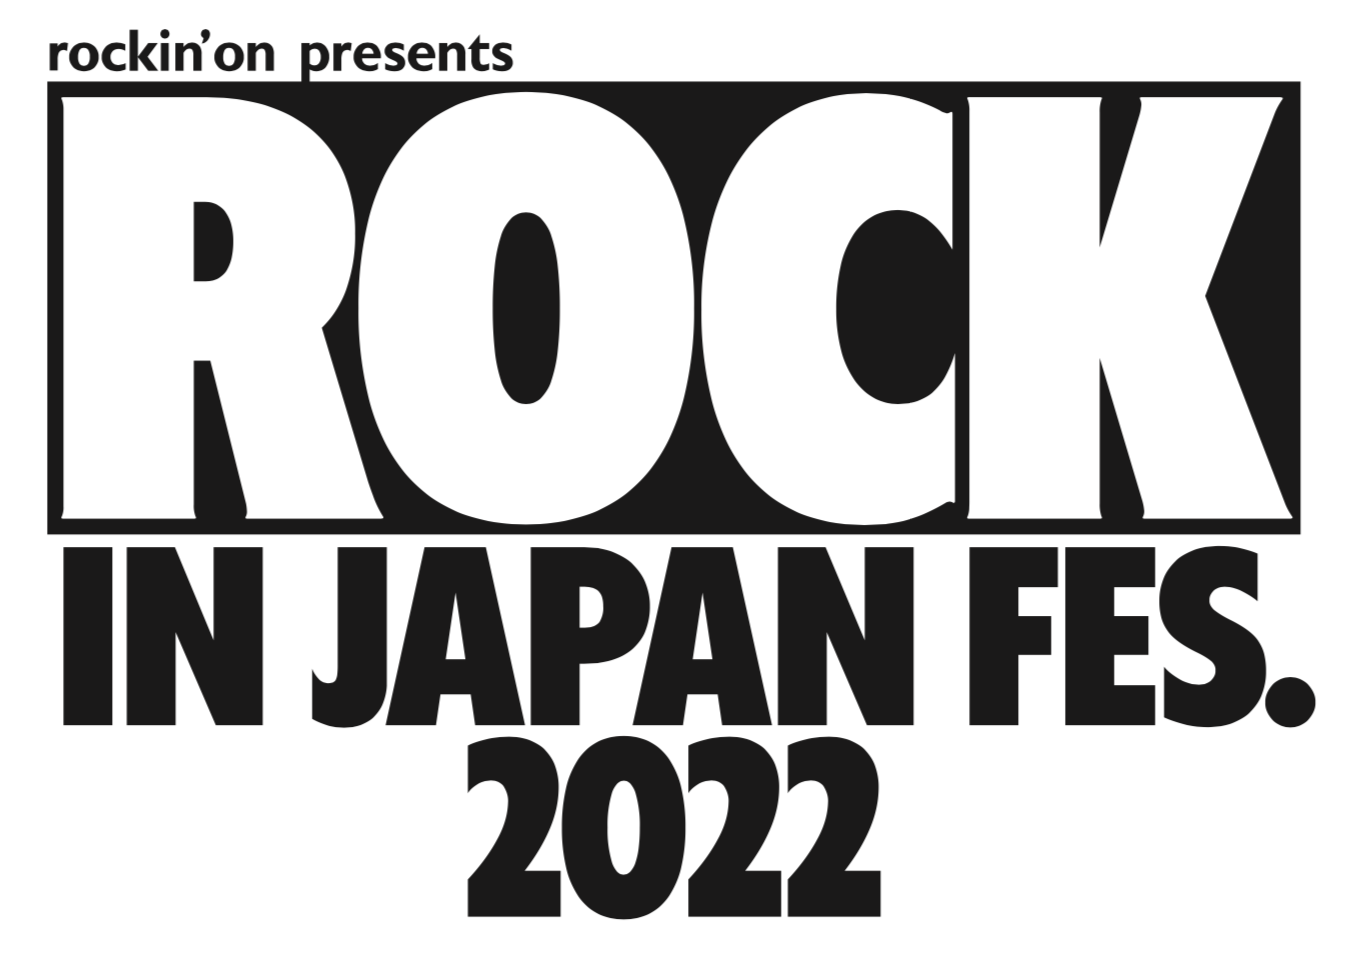 千葉市蘇我スポーツ公園 <span class="soldout">開催中止</span><span class="live-title">ROCK IN JAPAN FESTIVAL 2022</span>